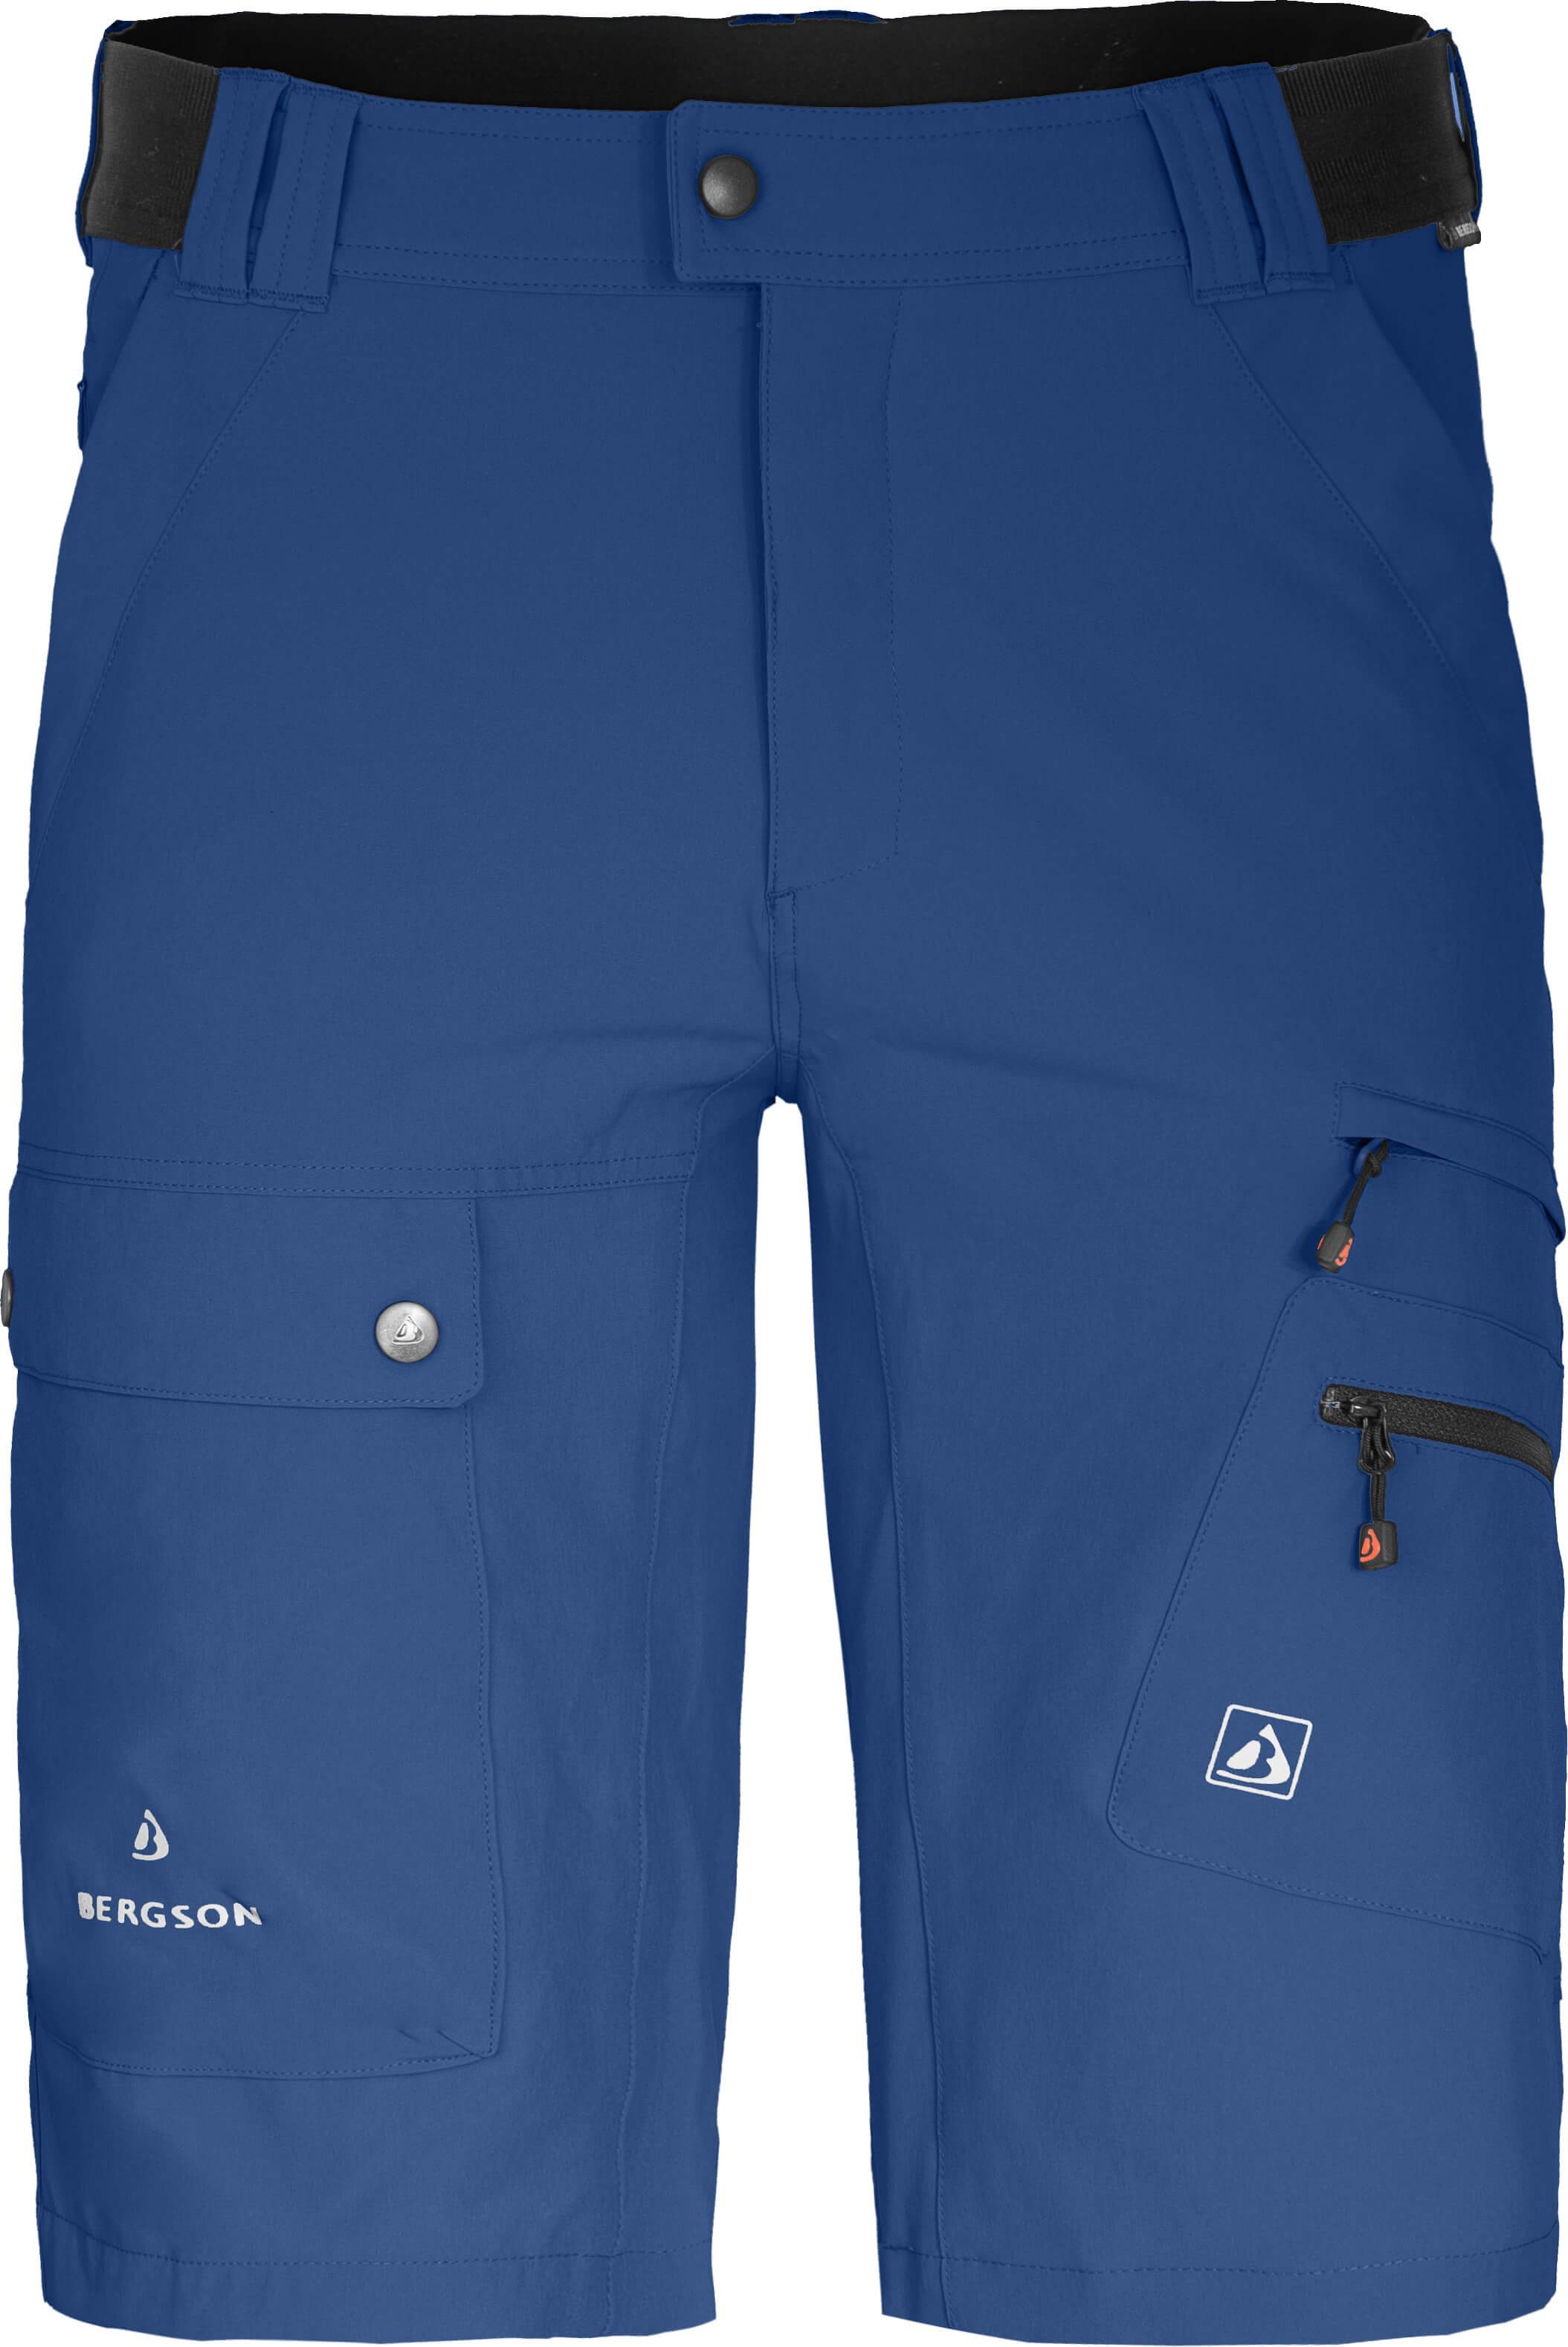 Bergson Outdoorhose FROSLEV Bermuda Herren Wandershorts, recycelt, elastisch, 8 Taschen, Normalgrößen blau